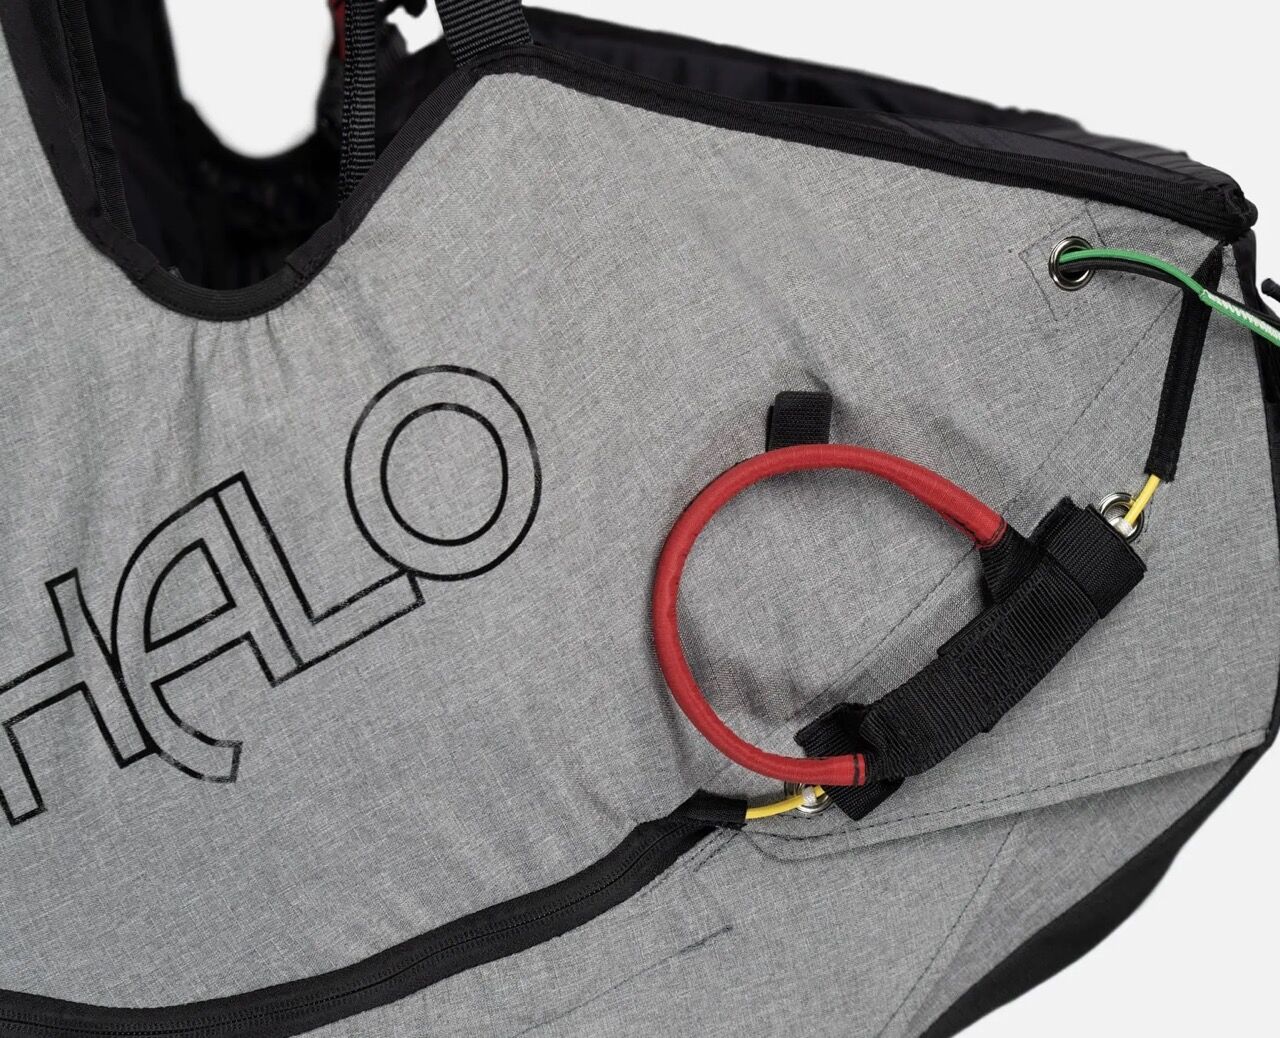 New Ozone Halo harness